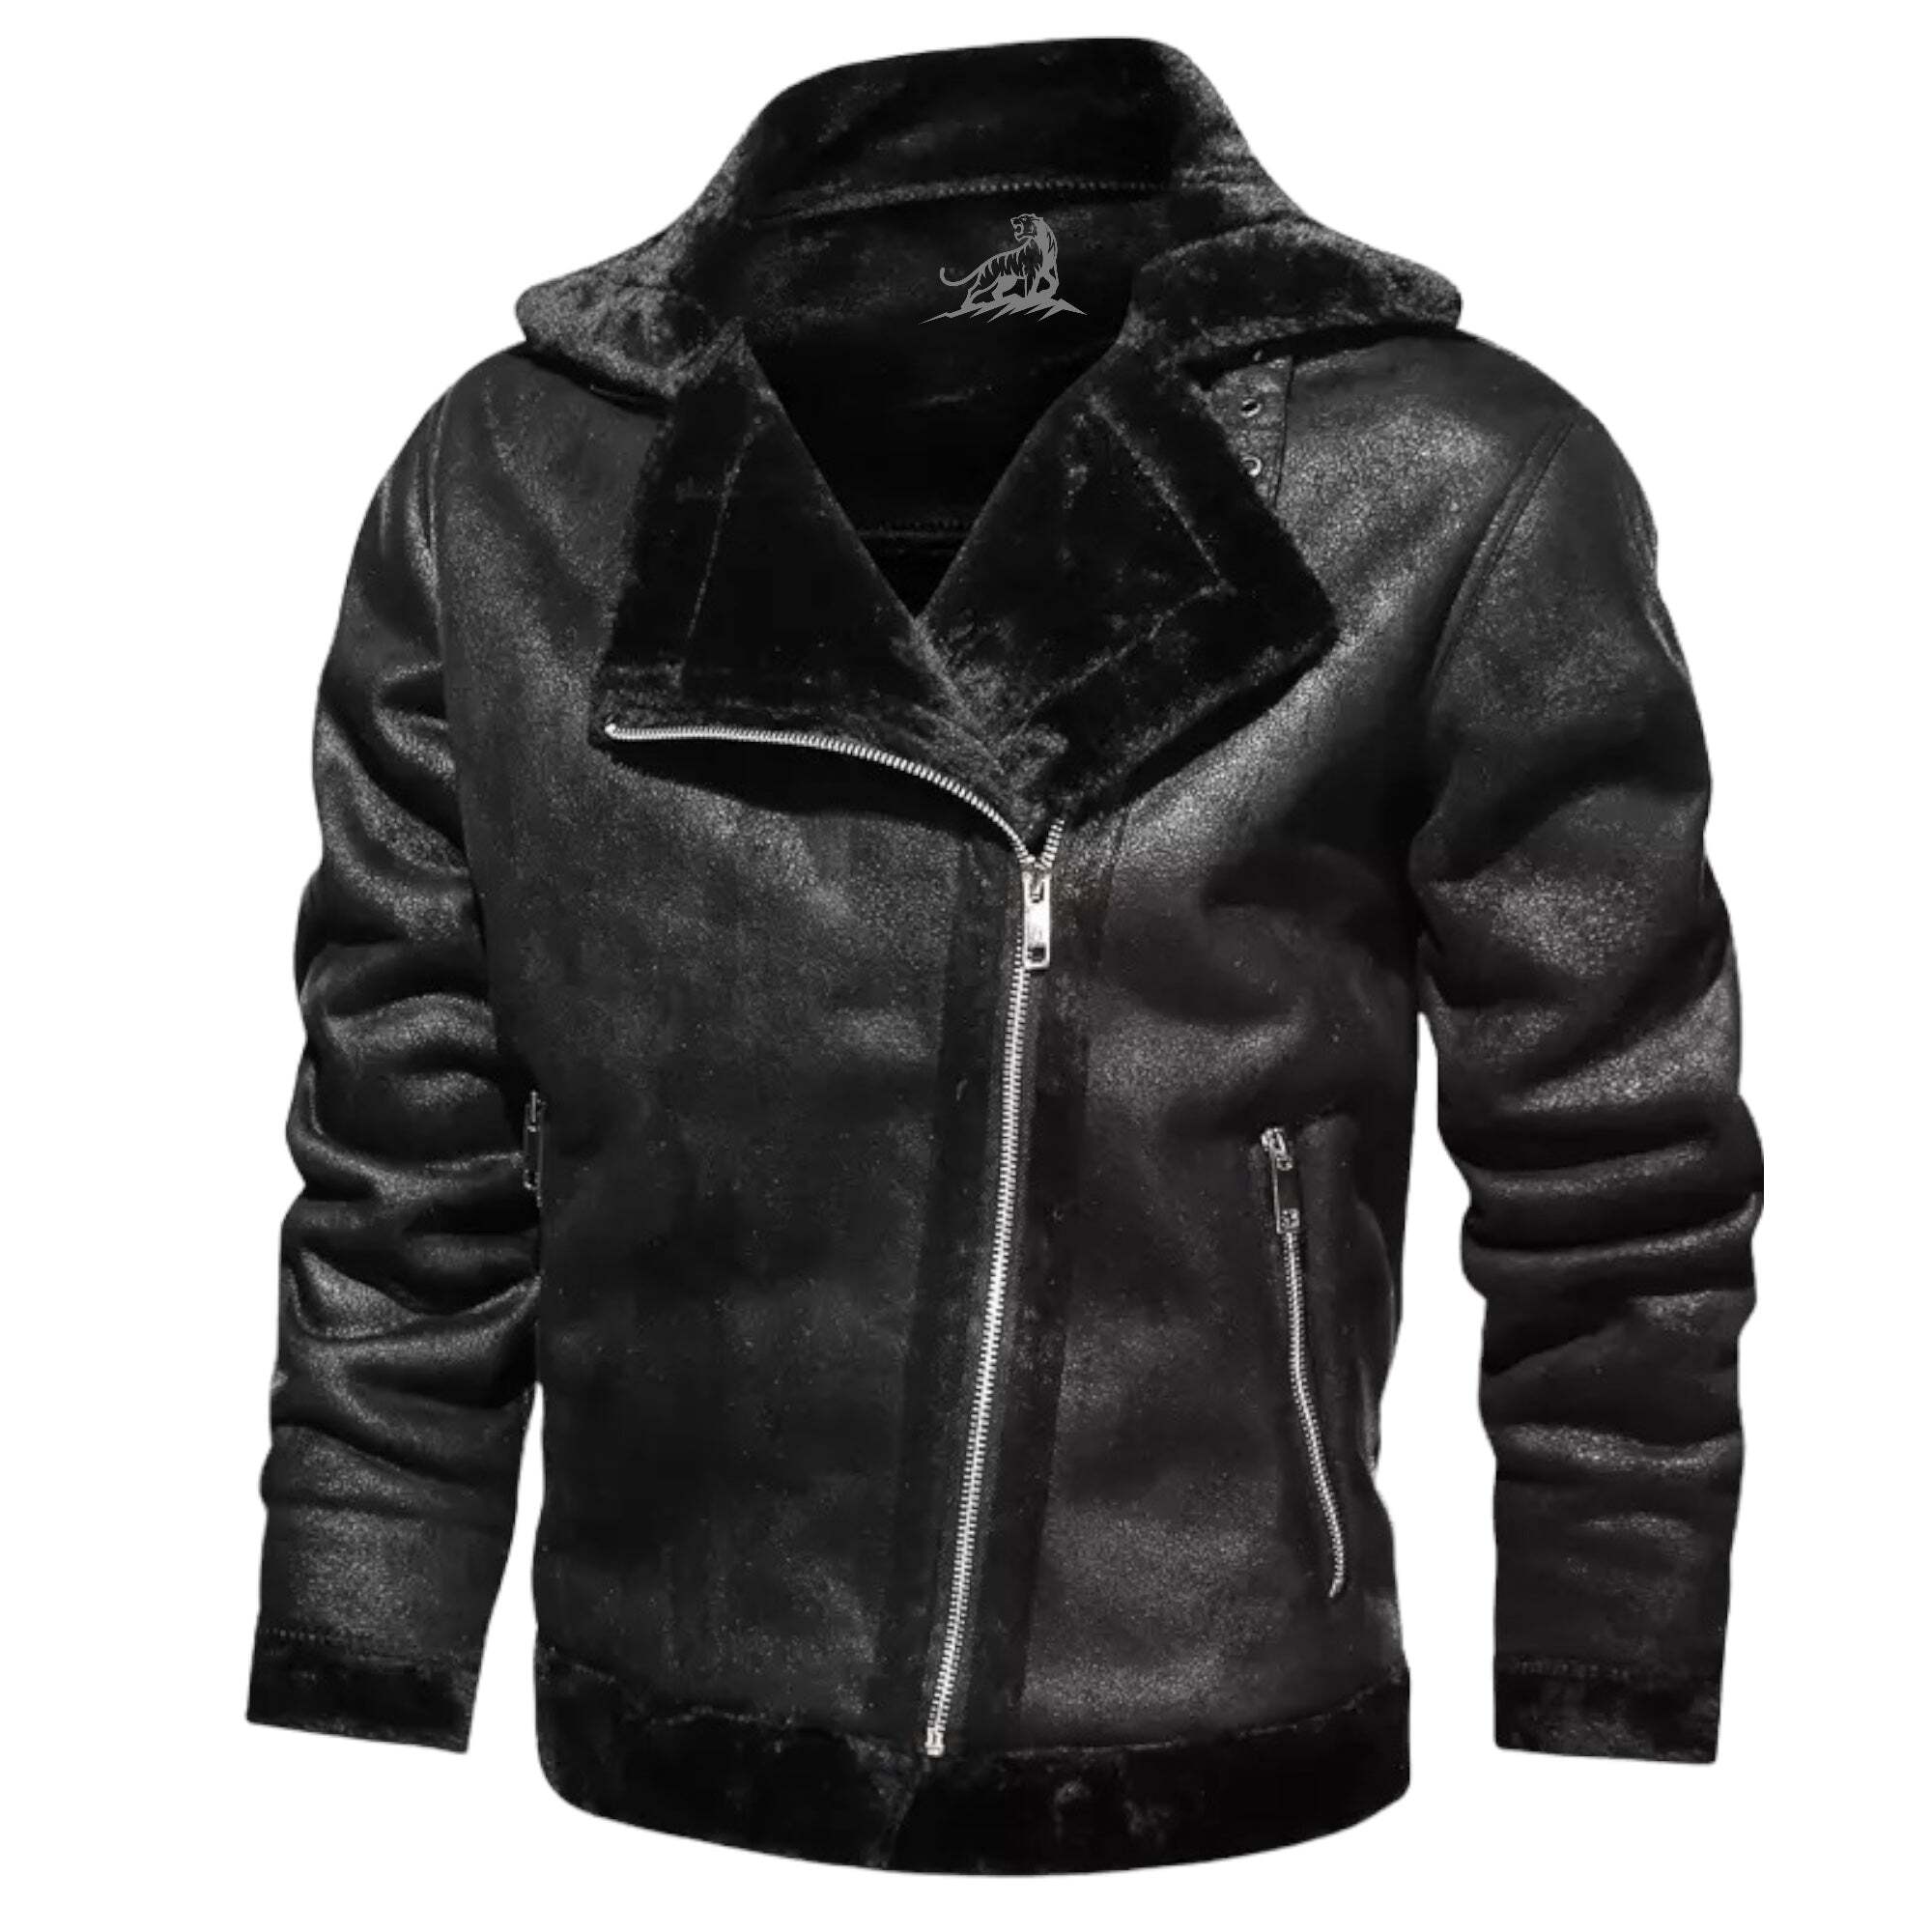 'Cyborg Swag' Leather Jacket